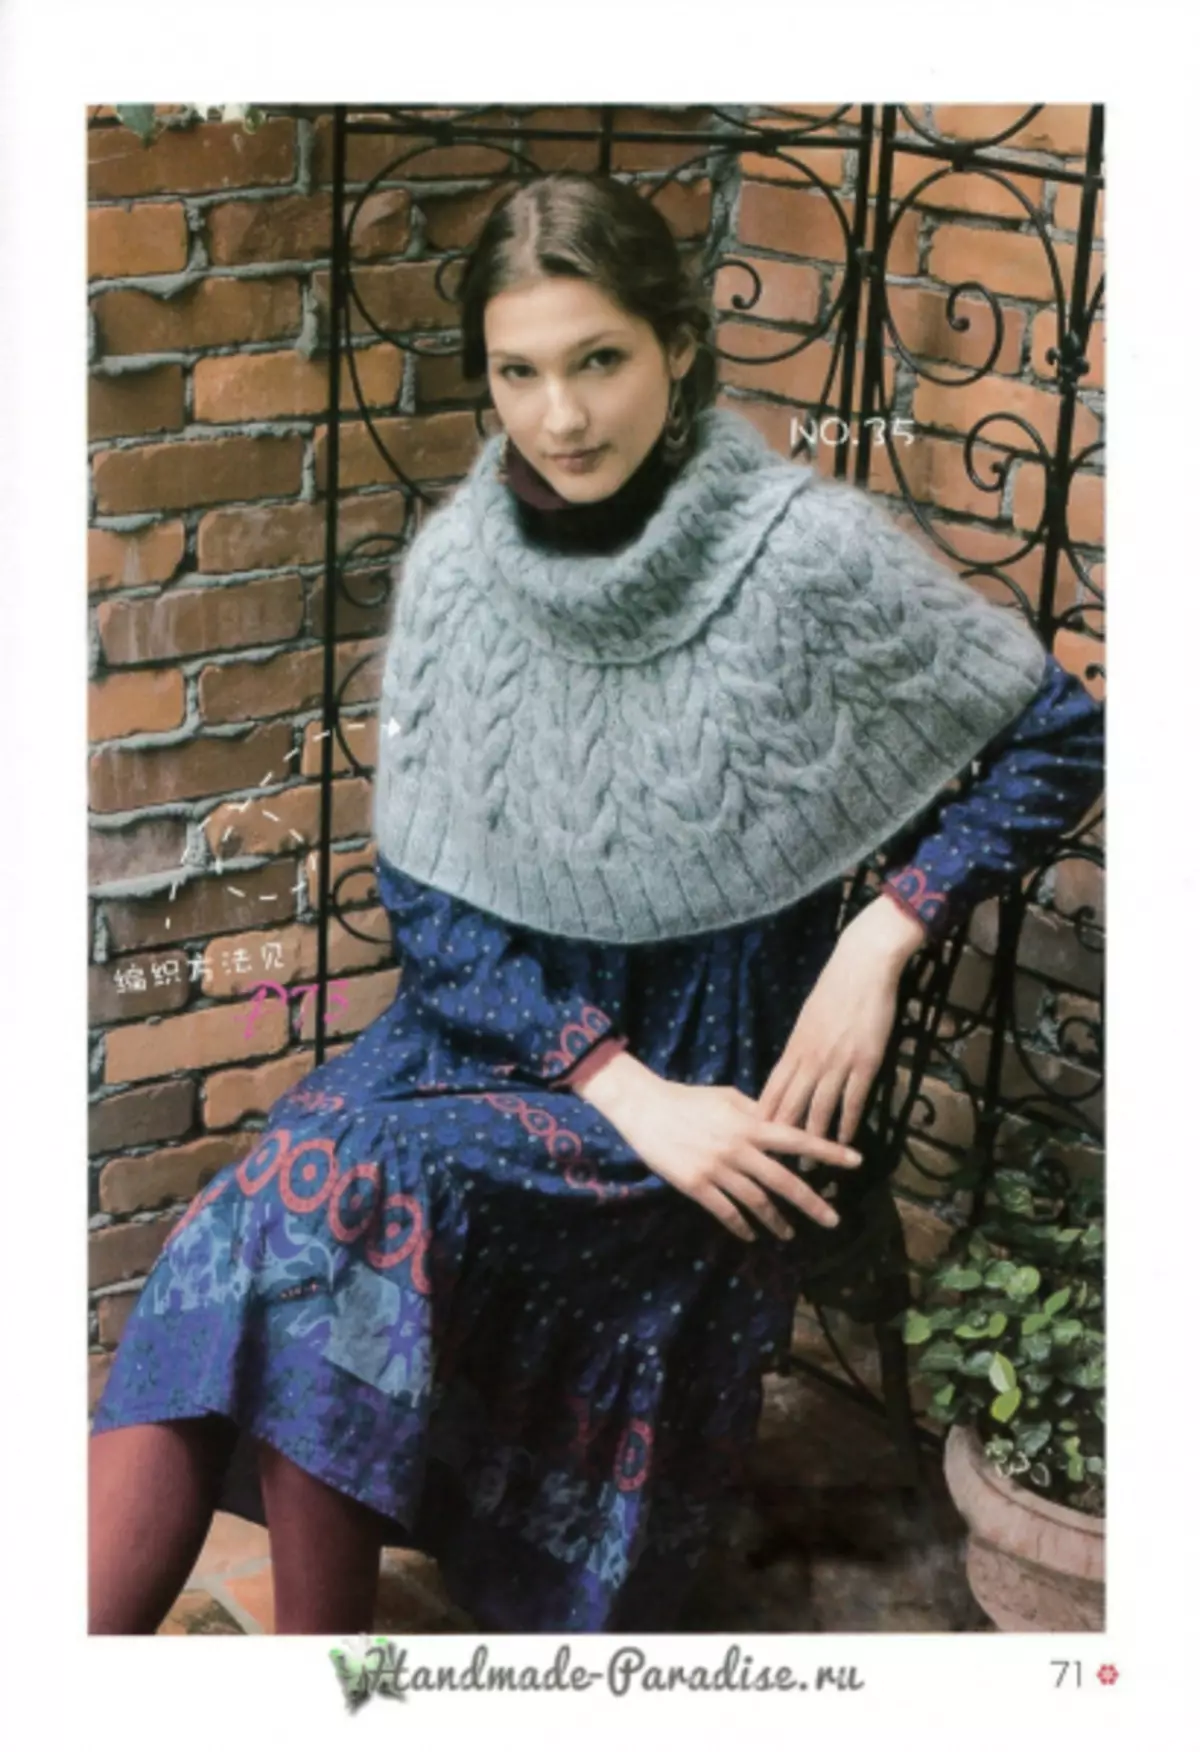 Cape à tricoter et poncho. Magazine japonais avec des régimes